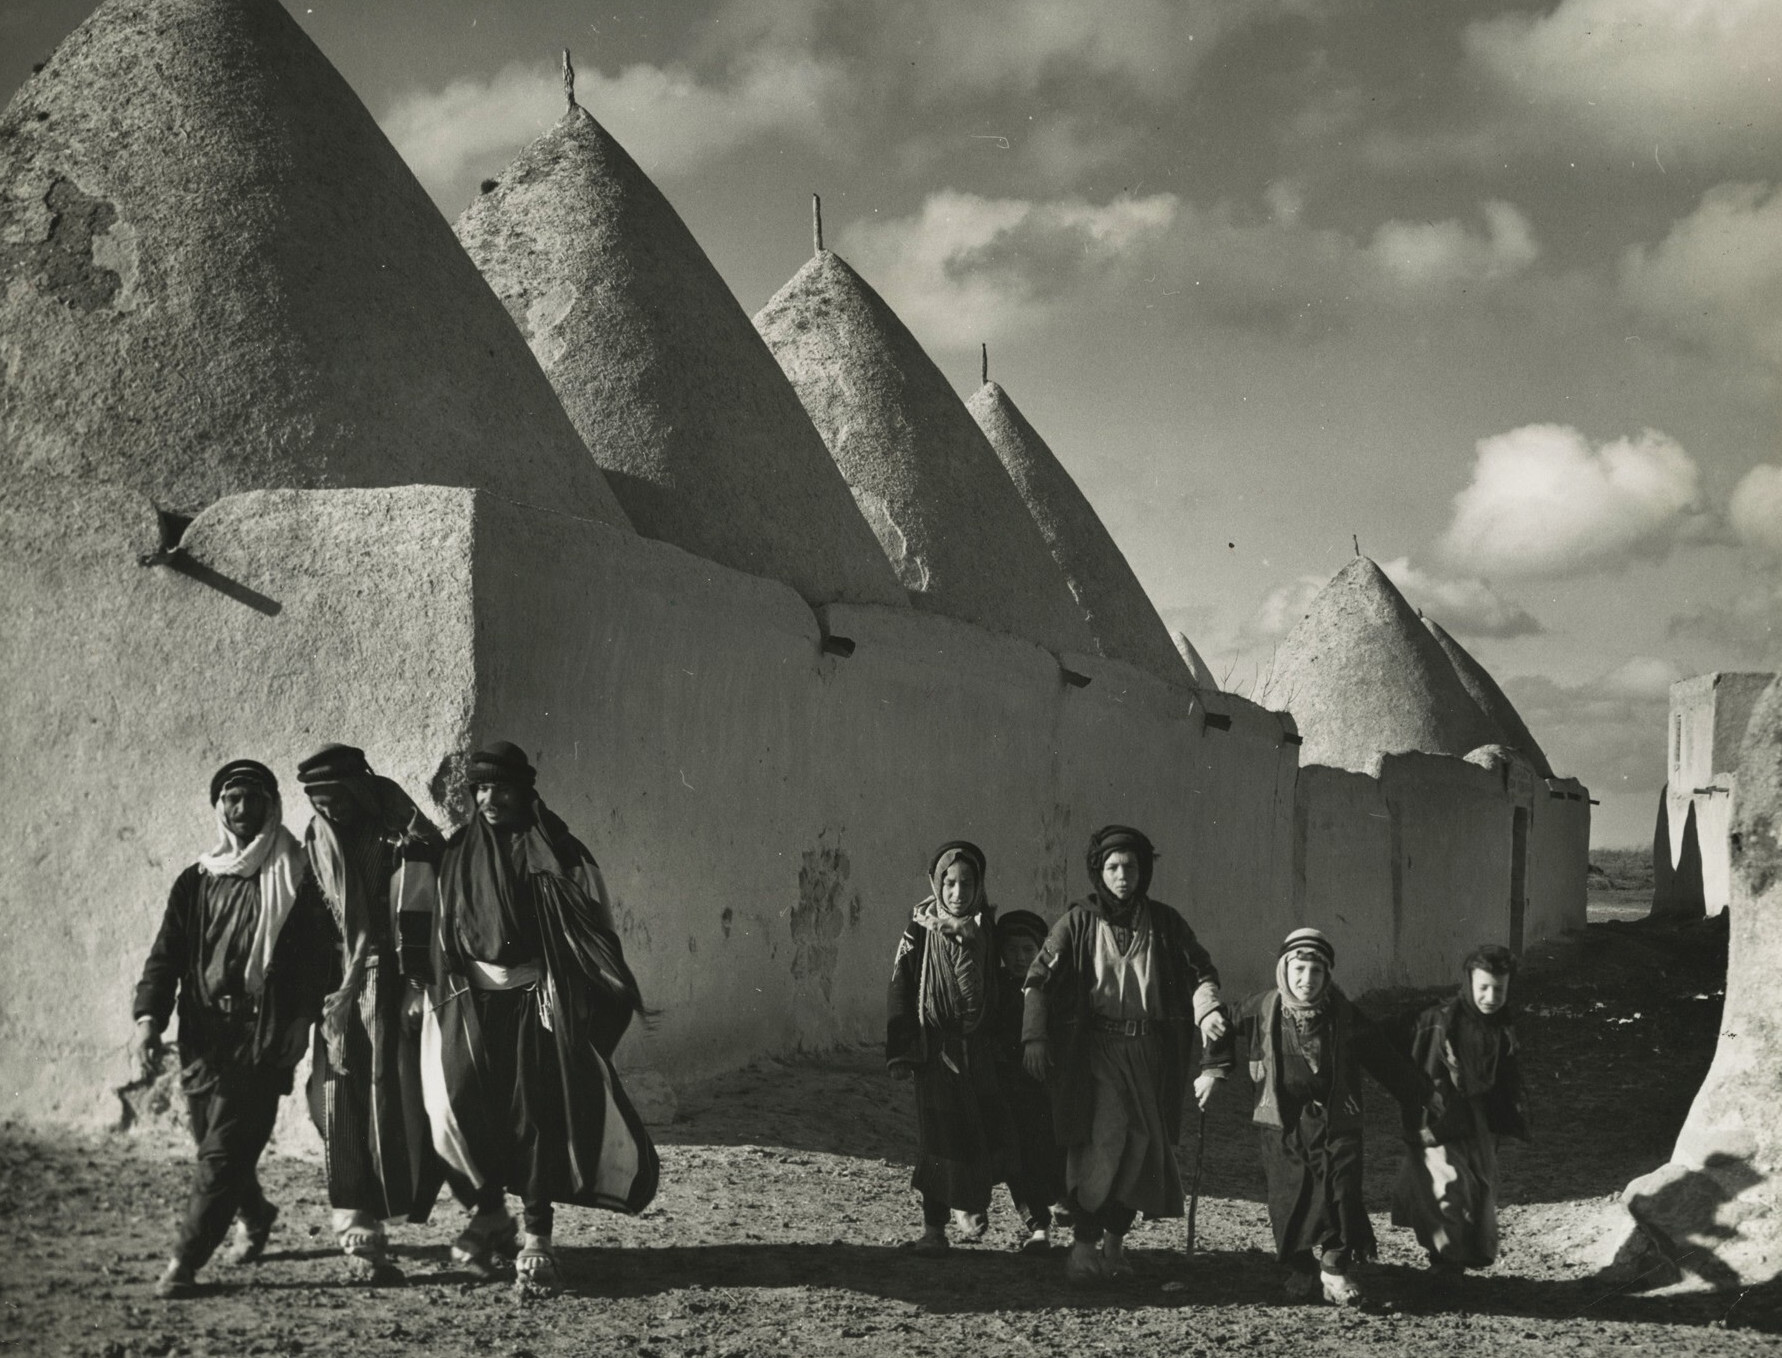 Сирийская семья, идущая по дороге мимо обнесенных стенами домов в форме старого финикийского города, 1940 год. Фотограф Маргарет Бурк-Уайт